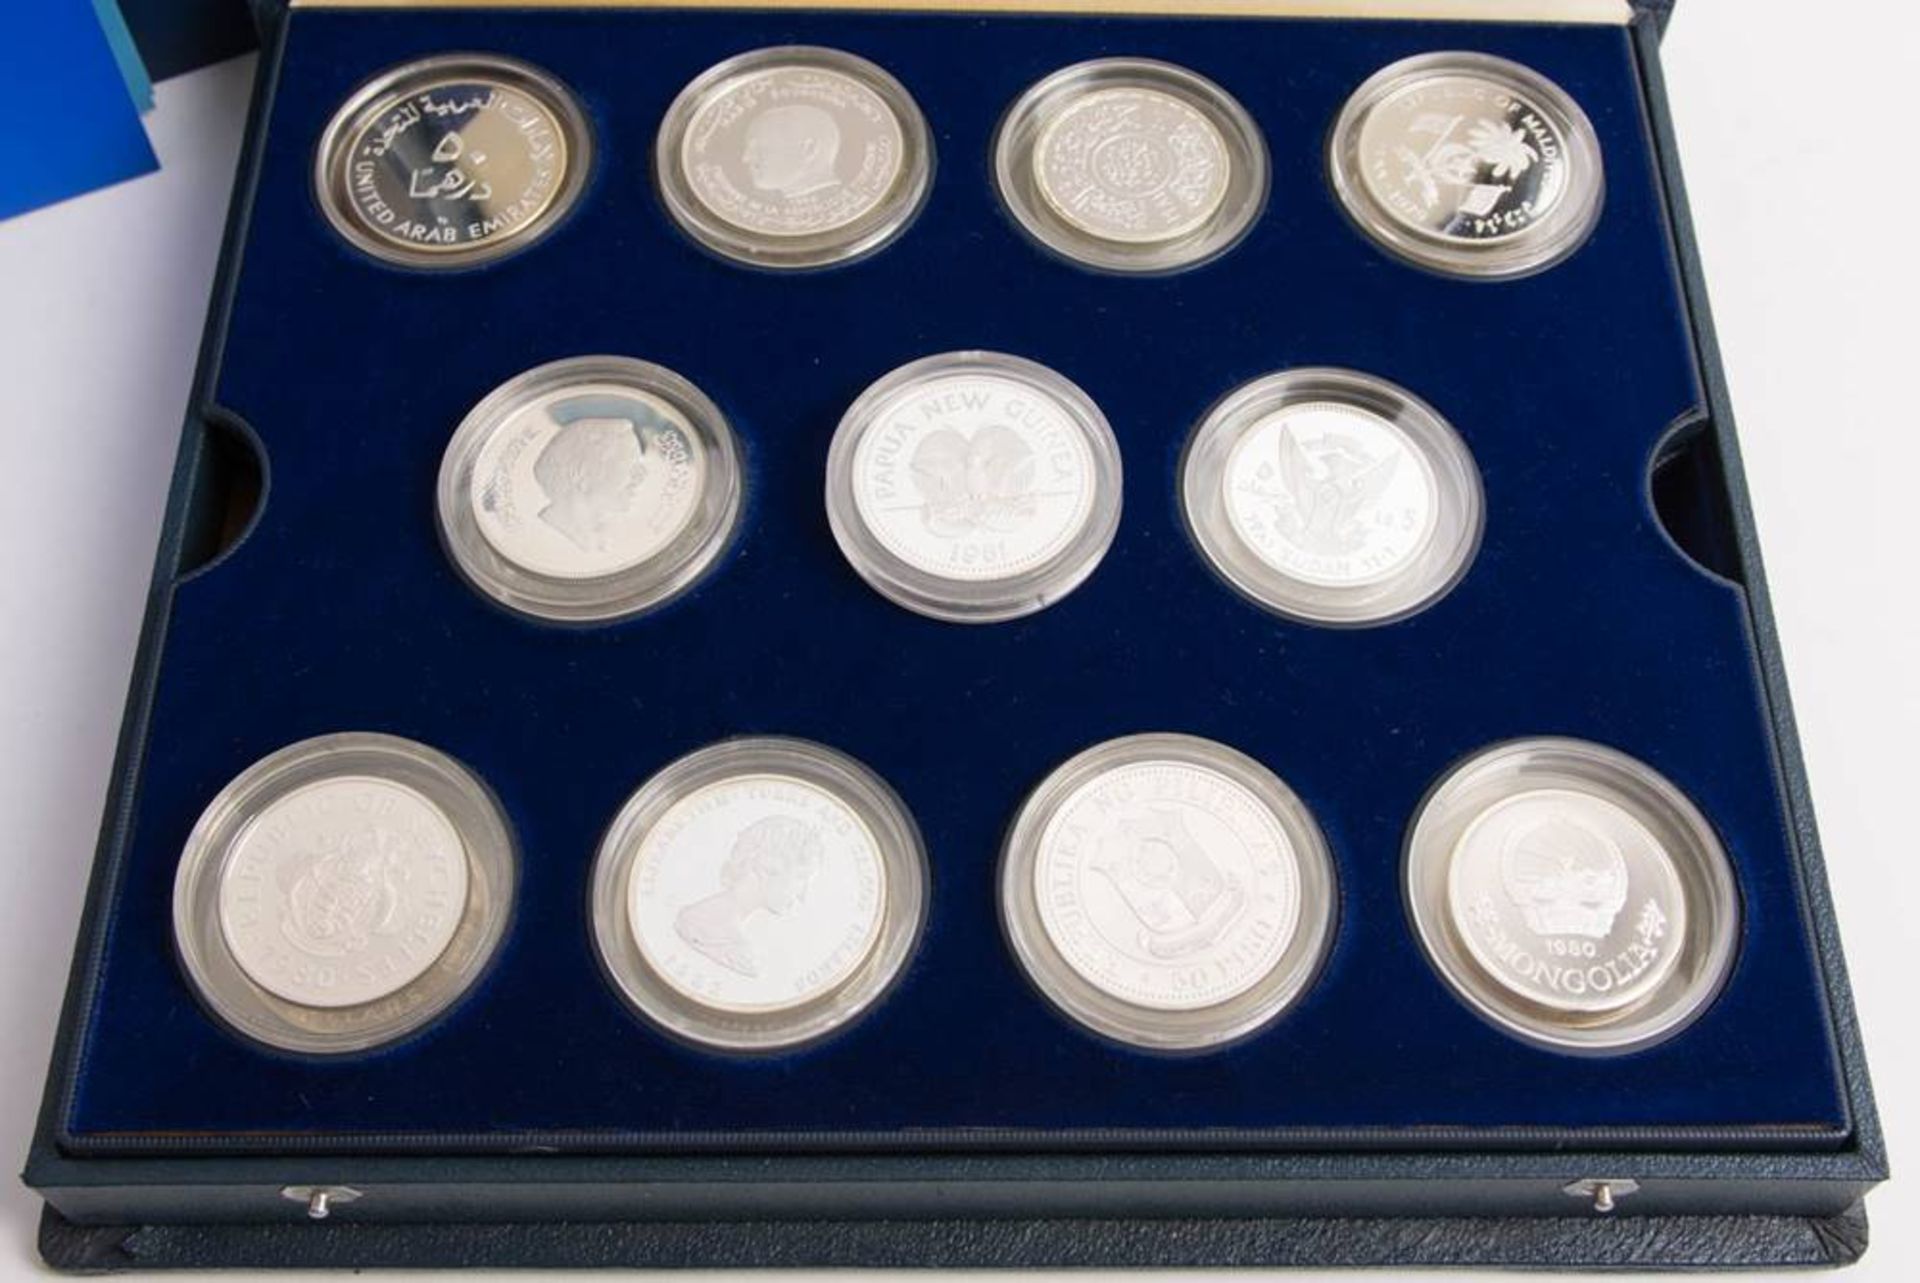 Sammlung Silbermünzen "Jahr des Kindes" über 400g Feinsilber. - Bild 2 aus 3